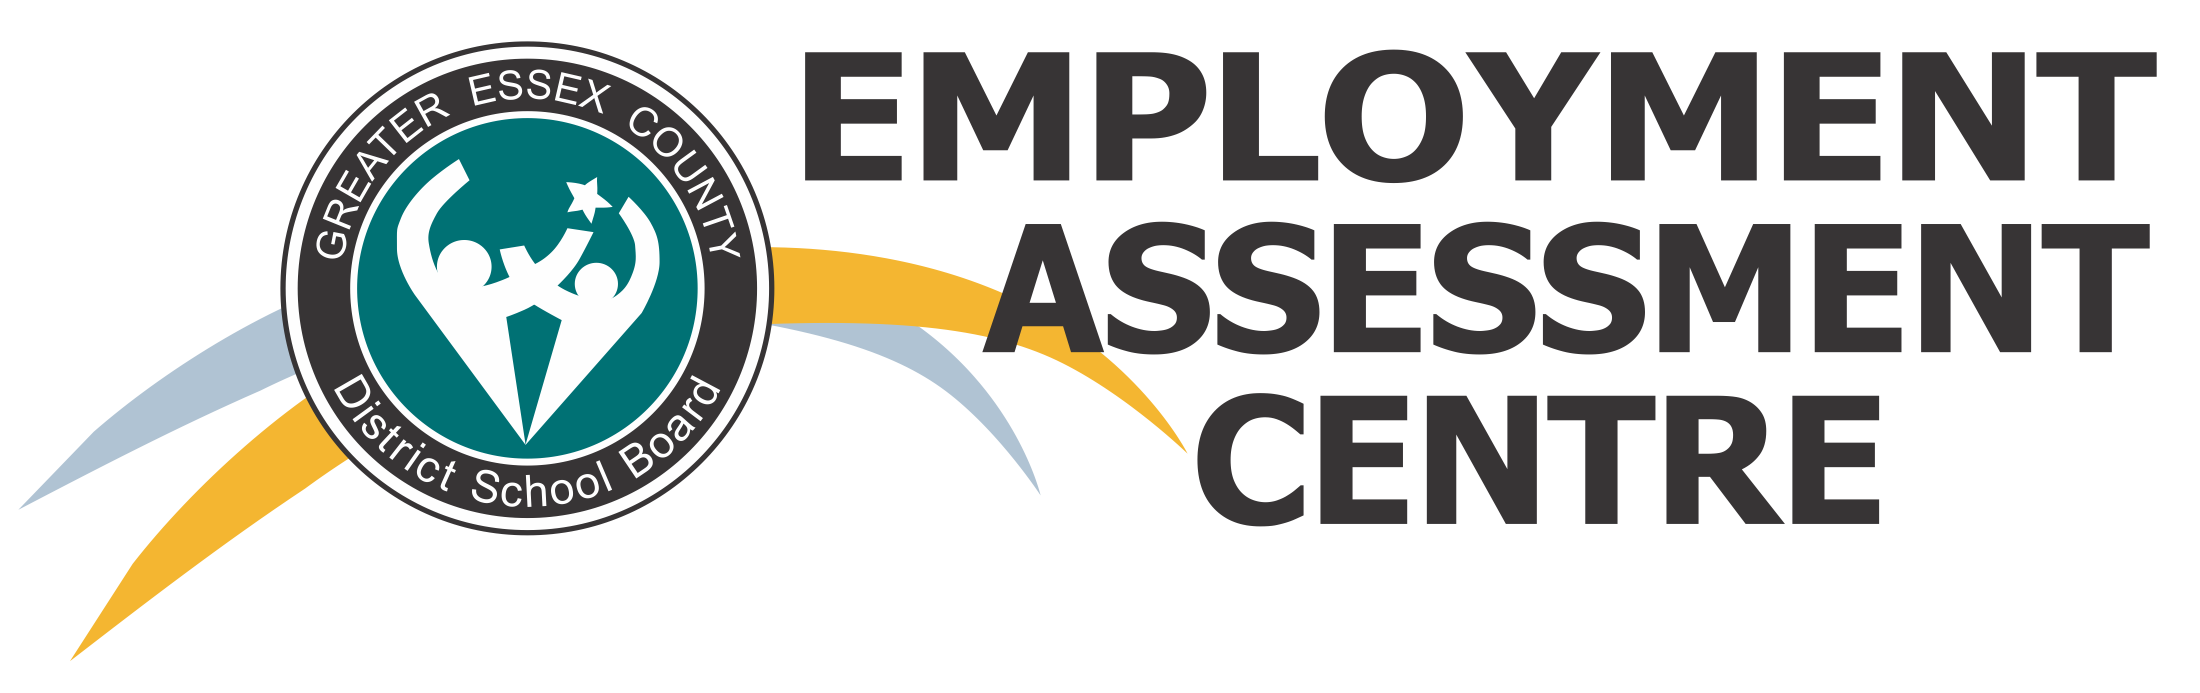 Employment Assessment Centre